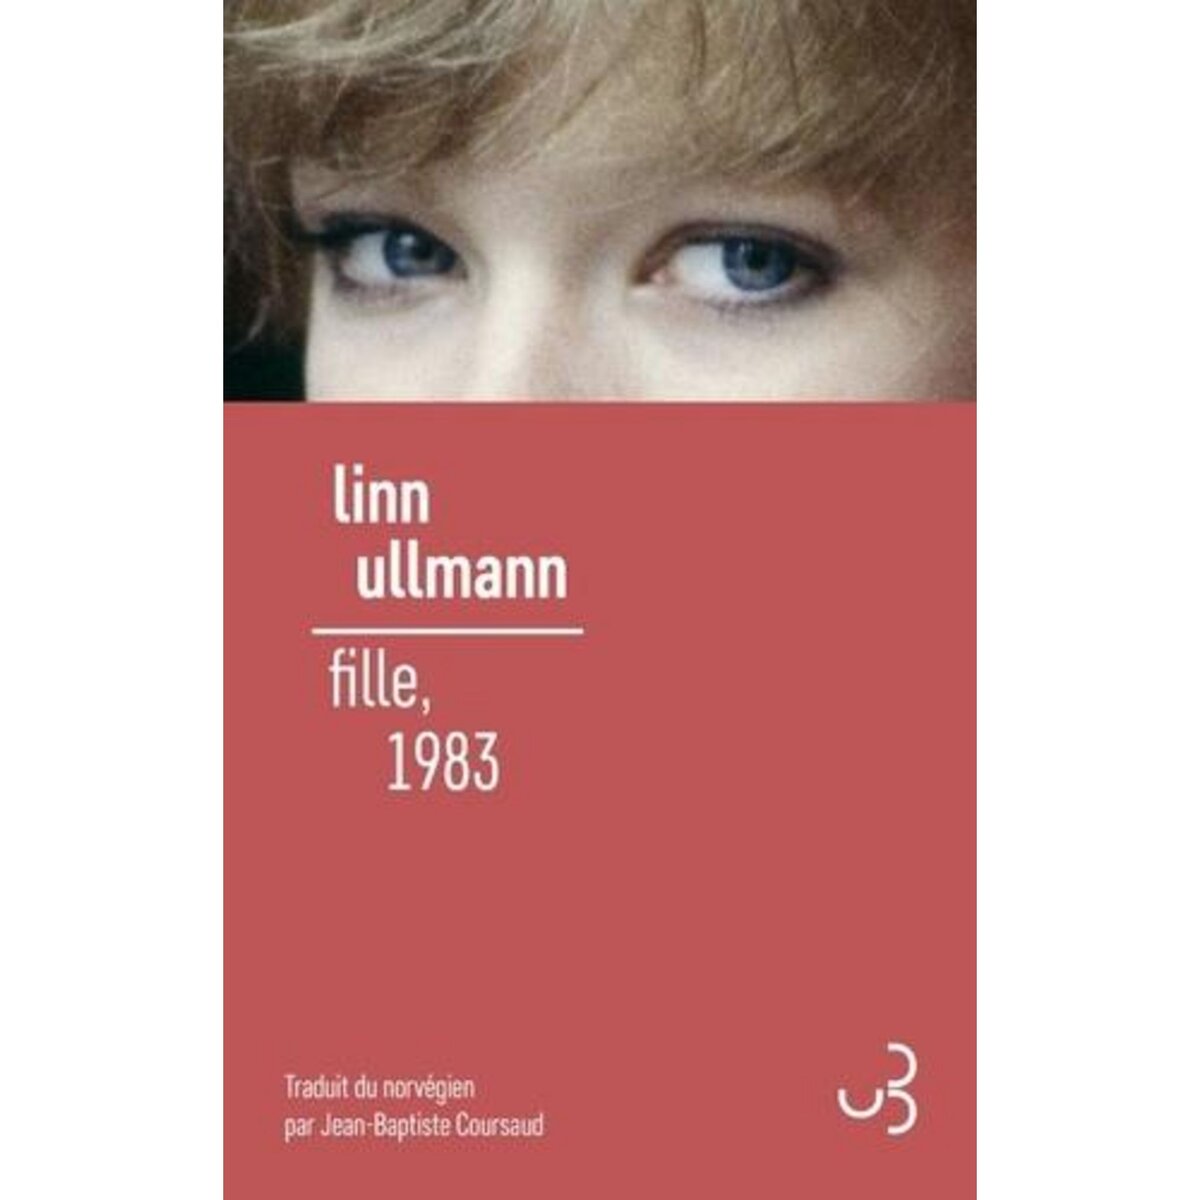  FILLE, 1983, Ullmann Linn